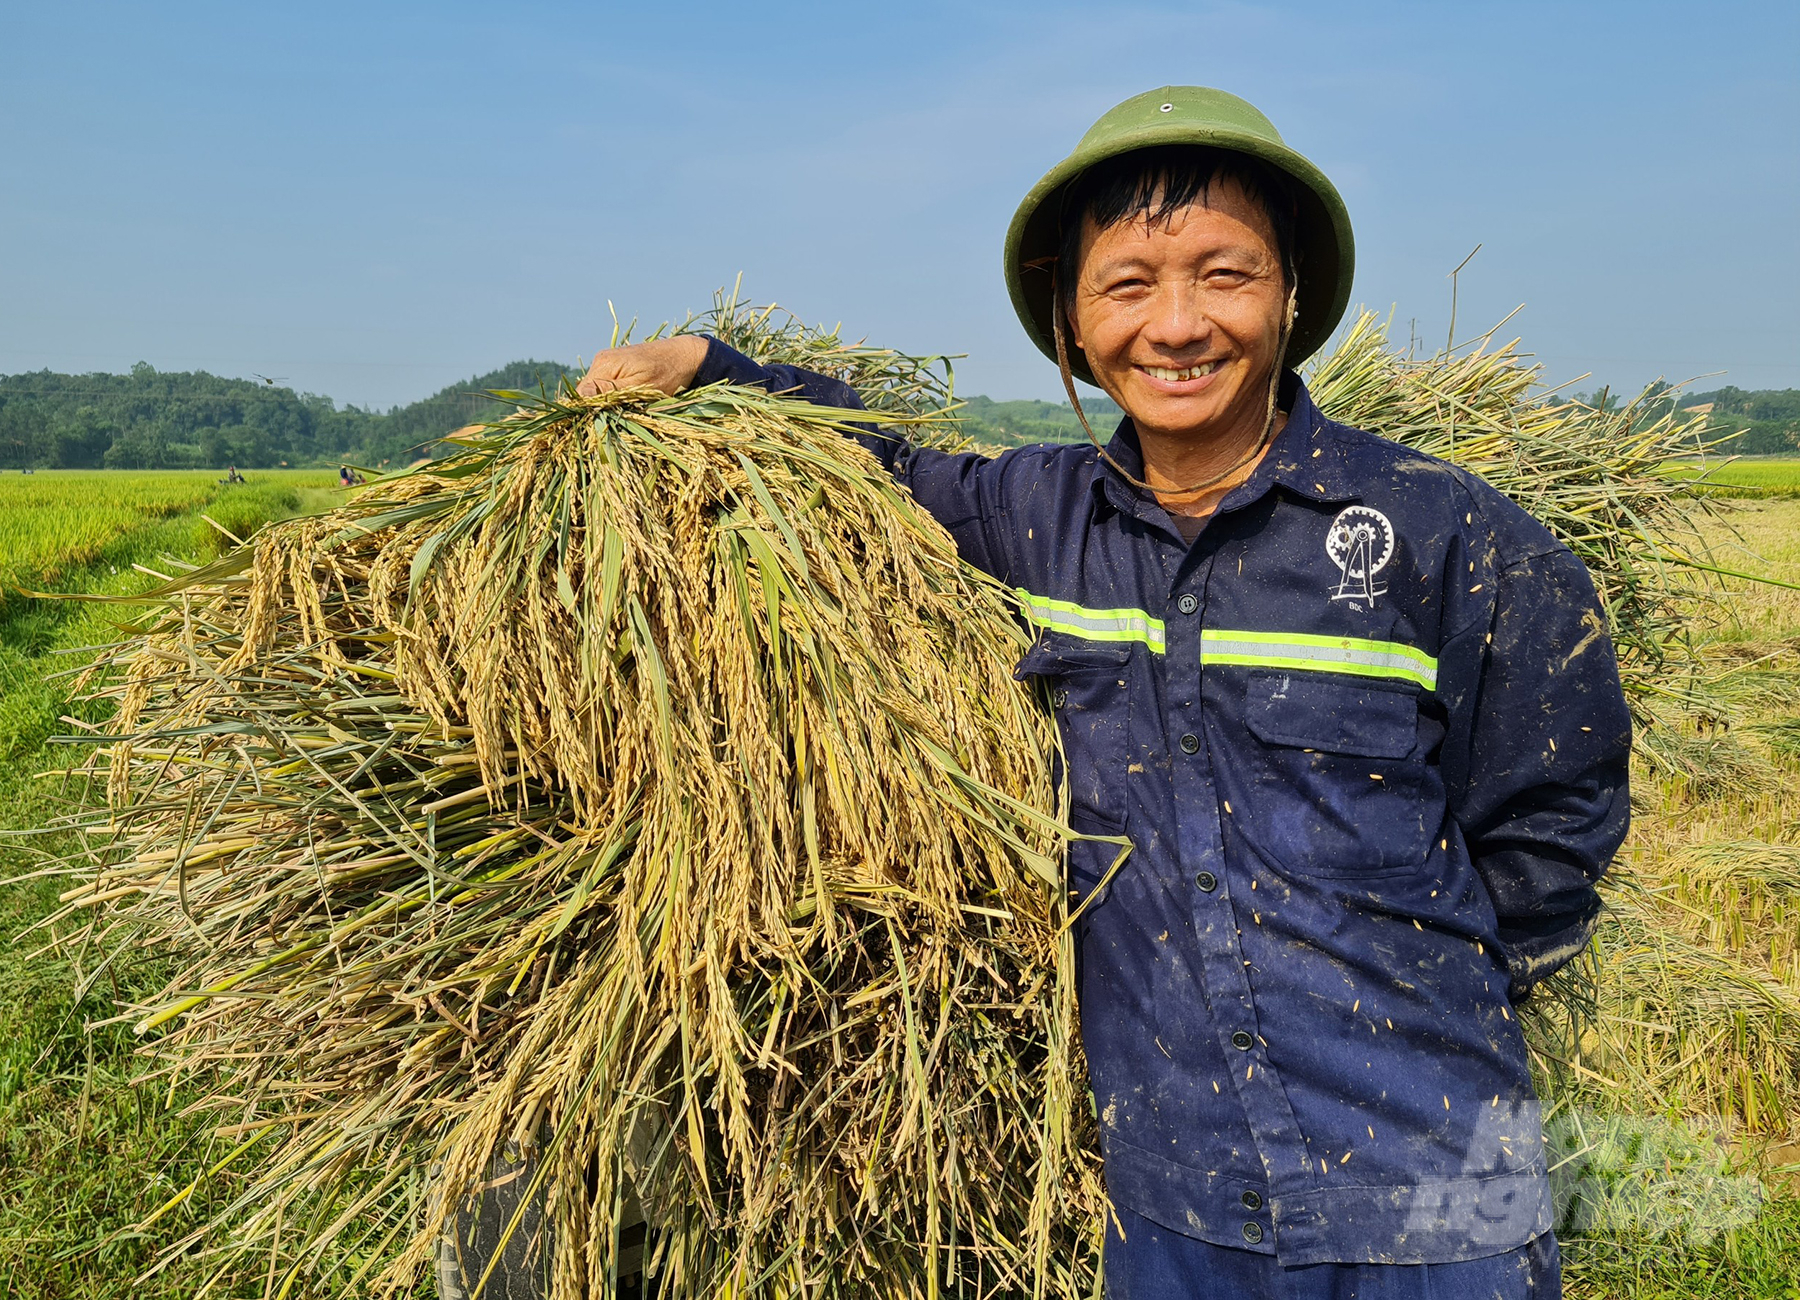 Lúa Thanh Hương 8 góp thêm niềm vui được mùa cho nông dân xứ Nghệ. Ảnh: Việt Khánh.